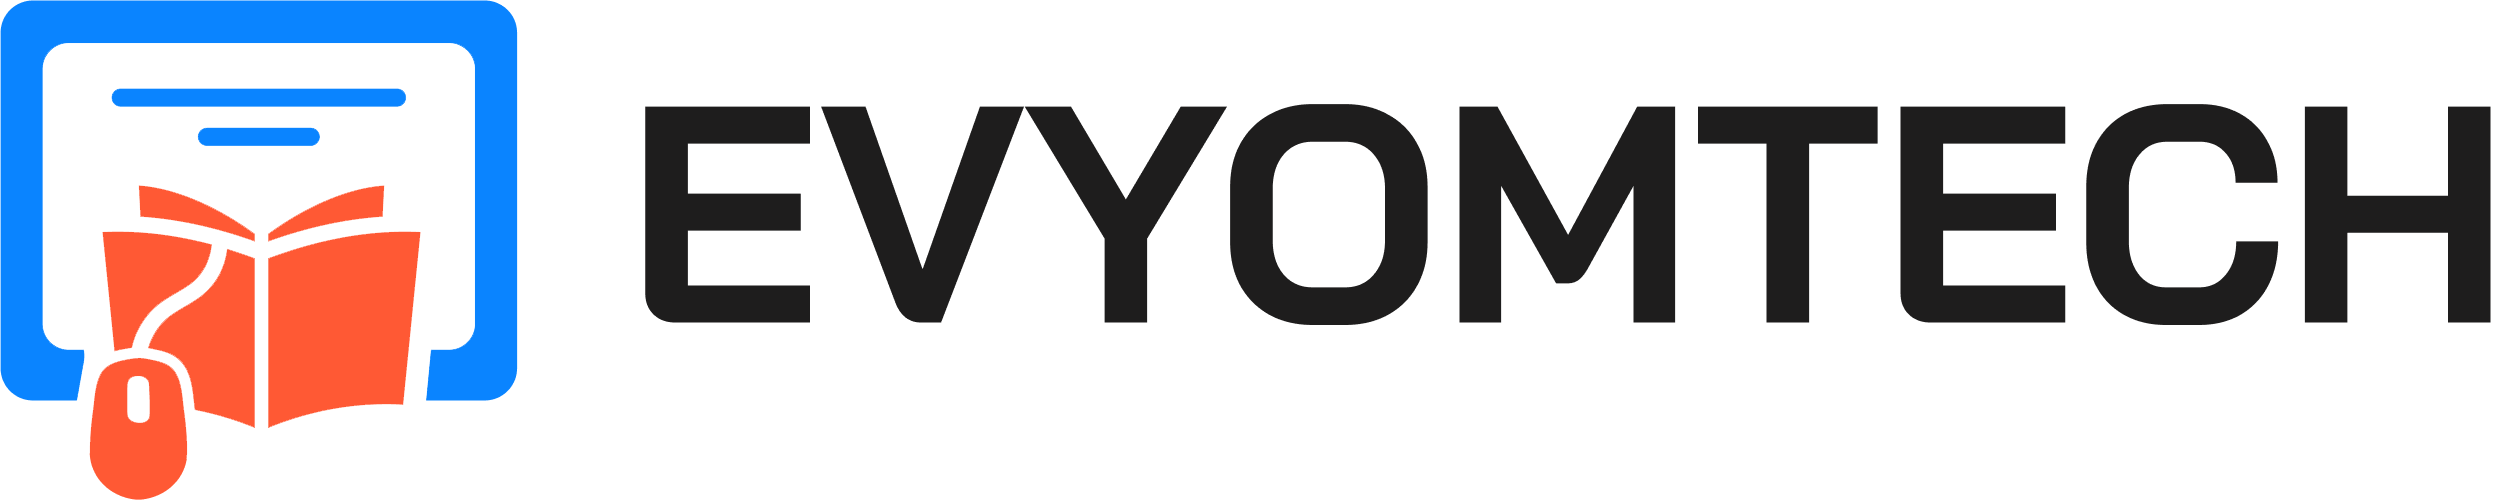 Evyom Education logo